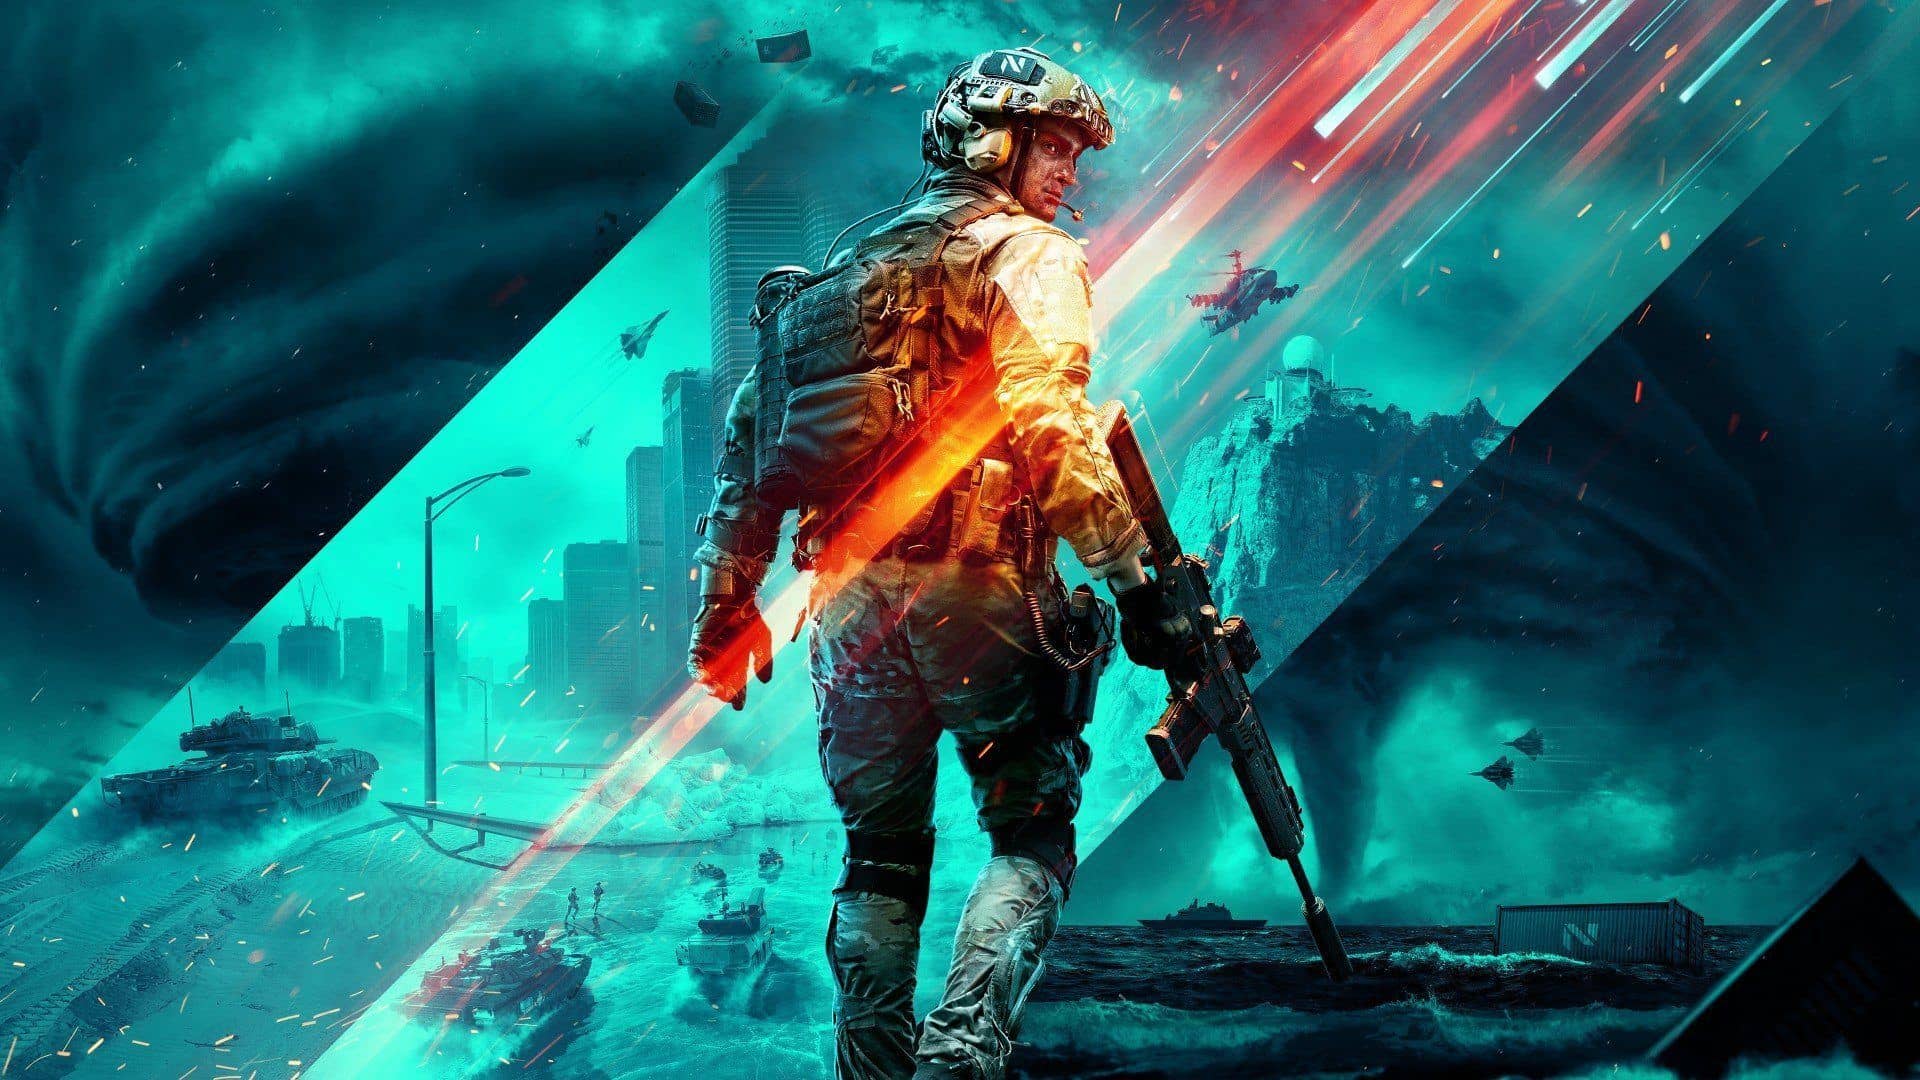 Датамайнер Том Хендерсон сообщил, что первое дополнение для Battlefield 2042 выйдет в марте.